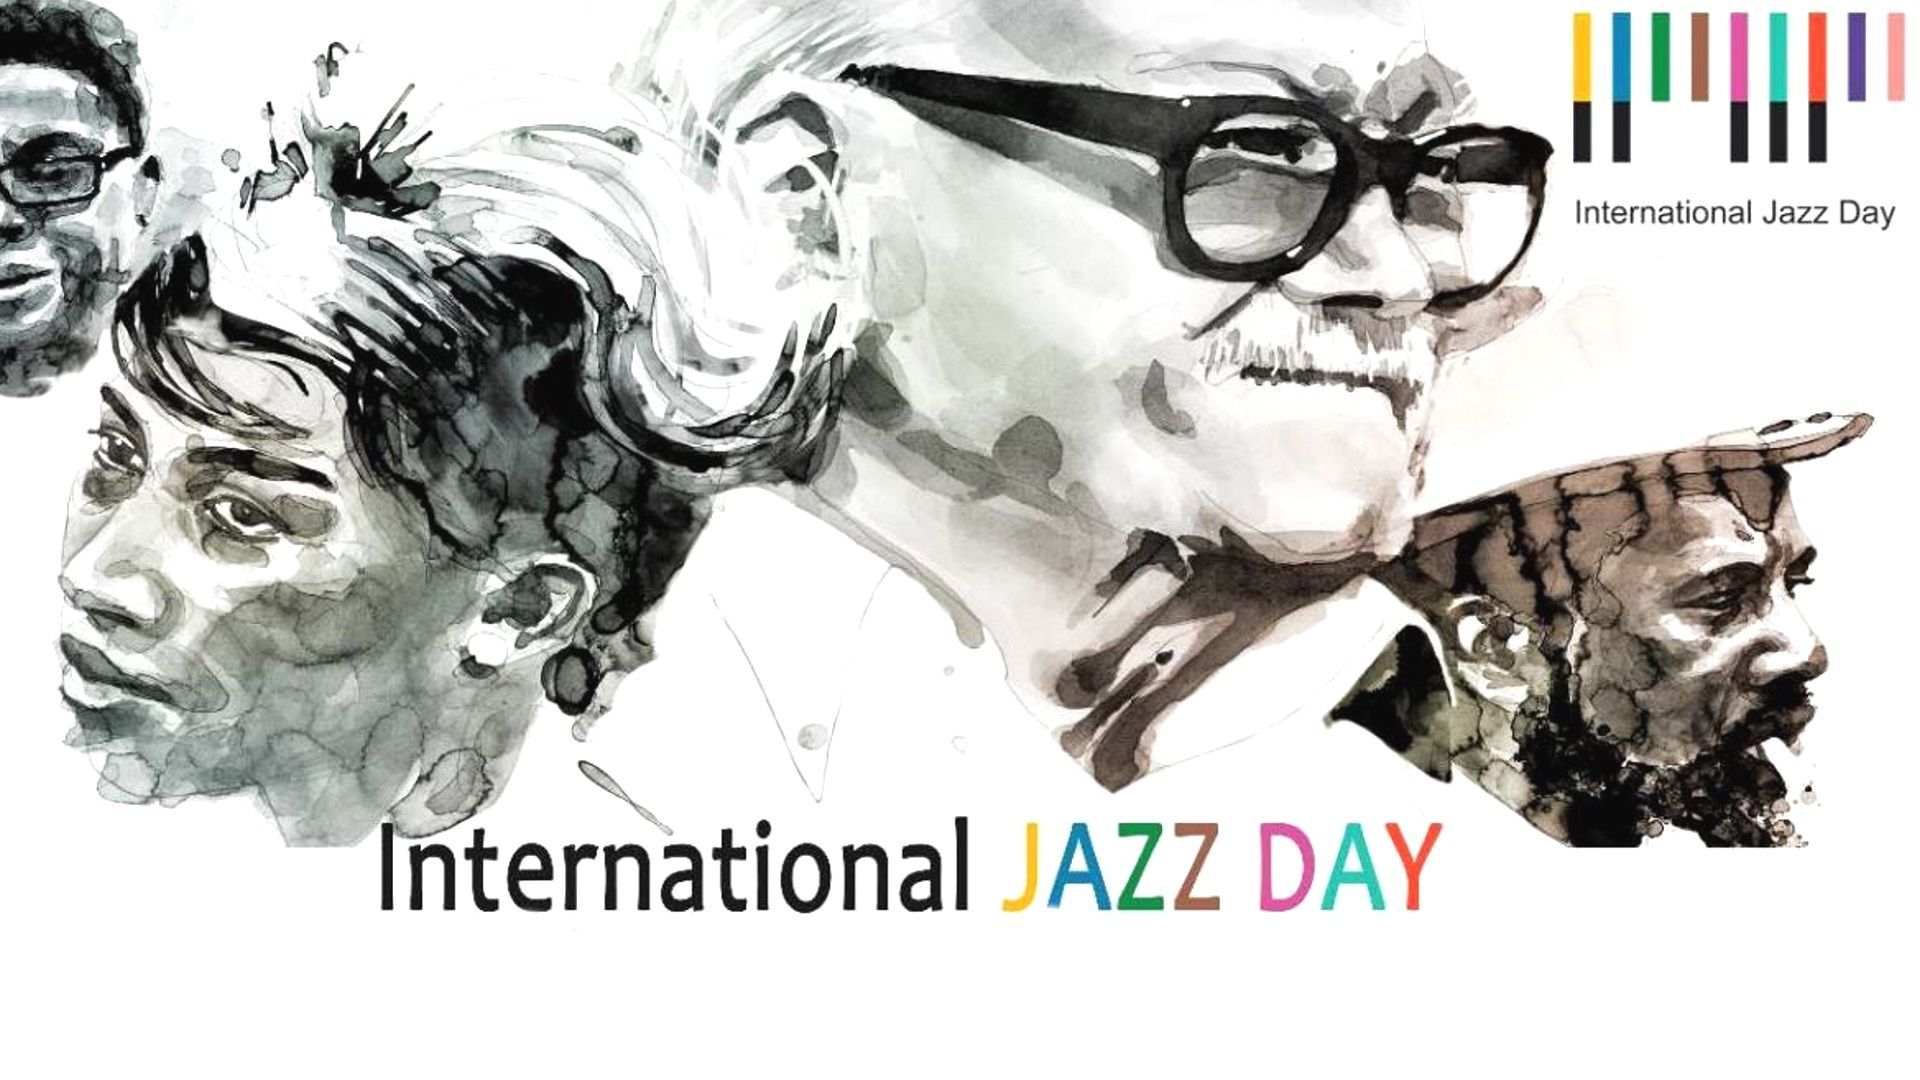 Ce 30 avril, c’est la journée internationale du jazz